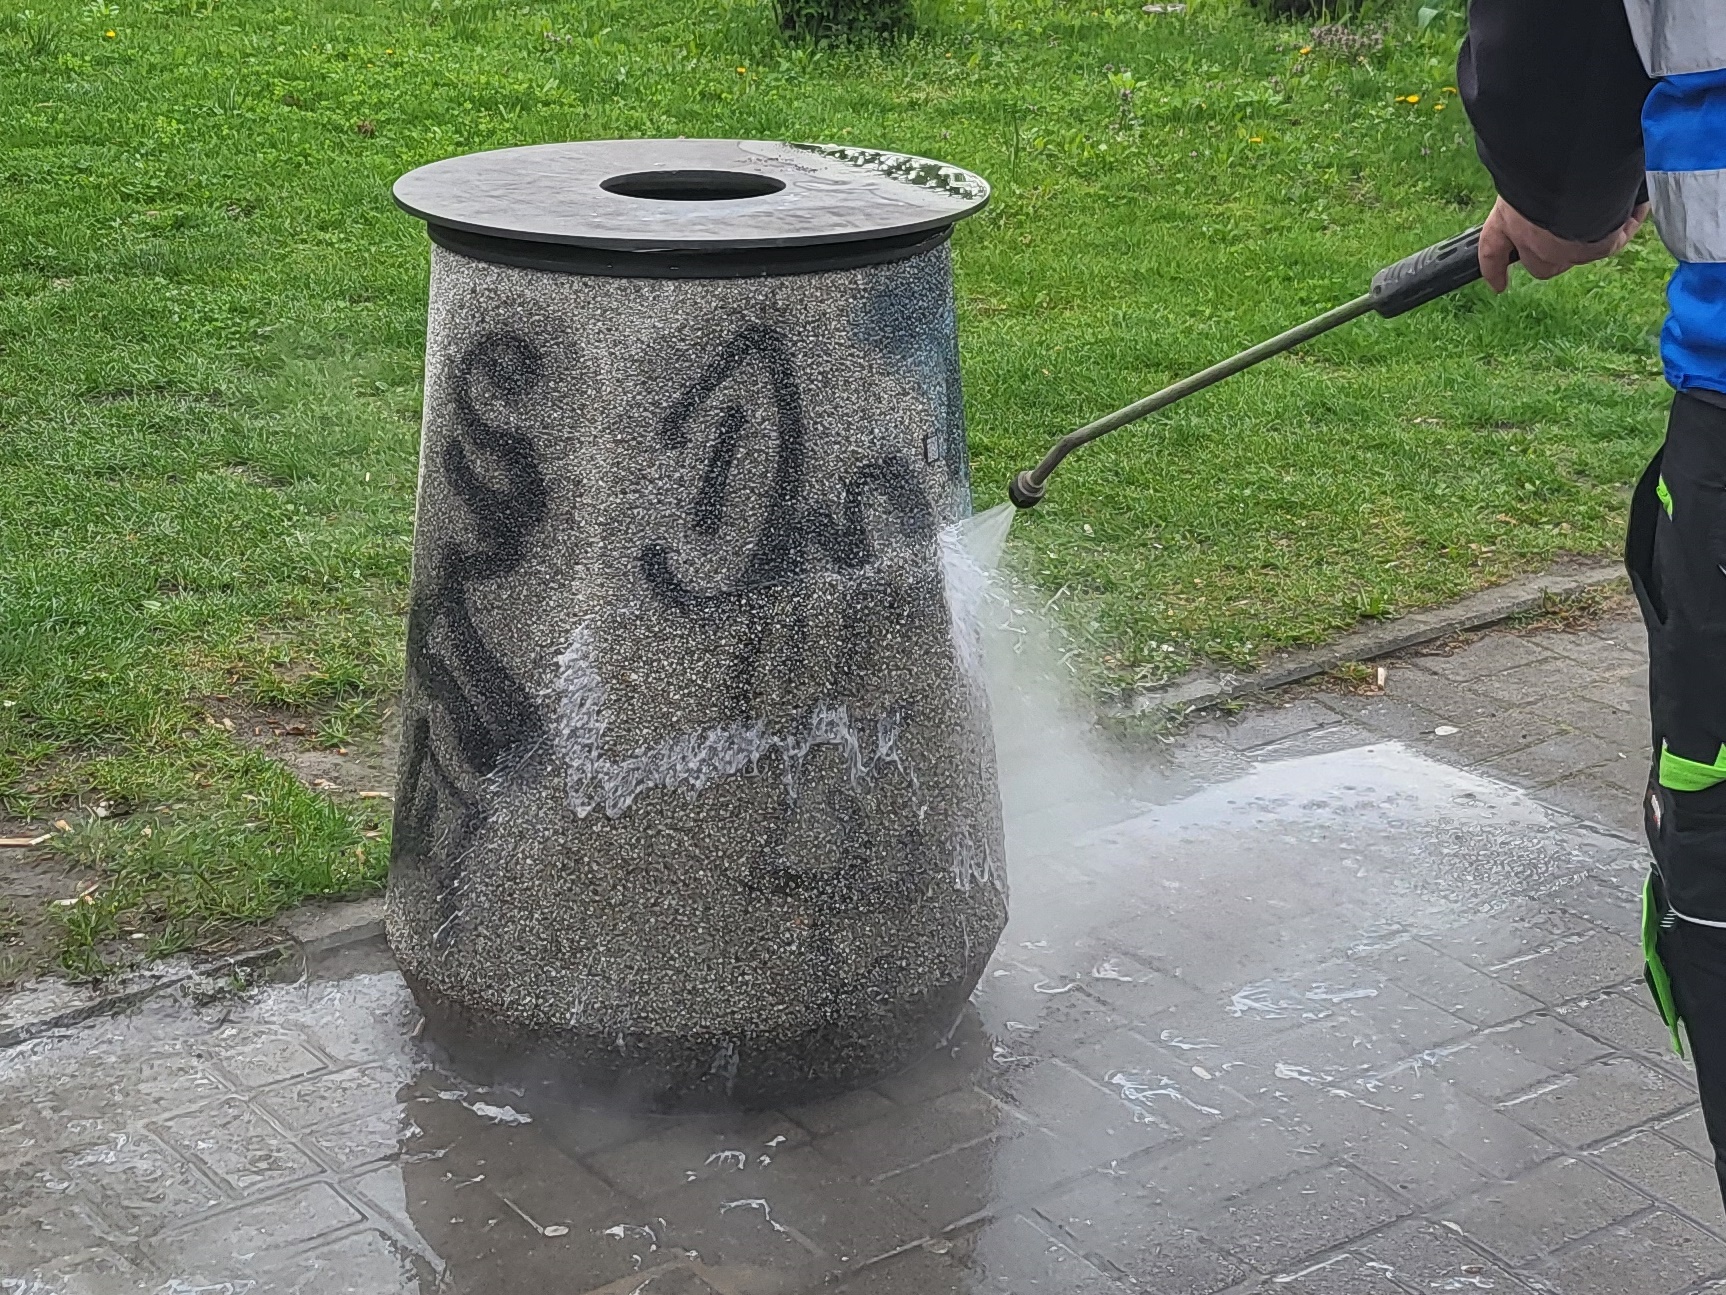 Pomazany betonowy kosz na chodniku, pracownik firmy porządkowej myje go z użyciem myjki cośnieniowej